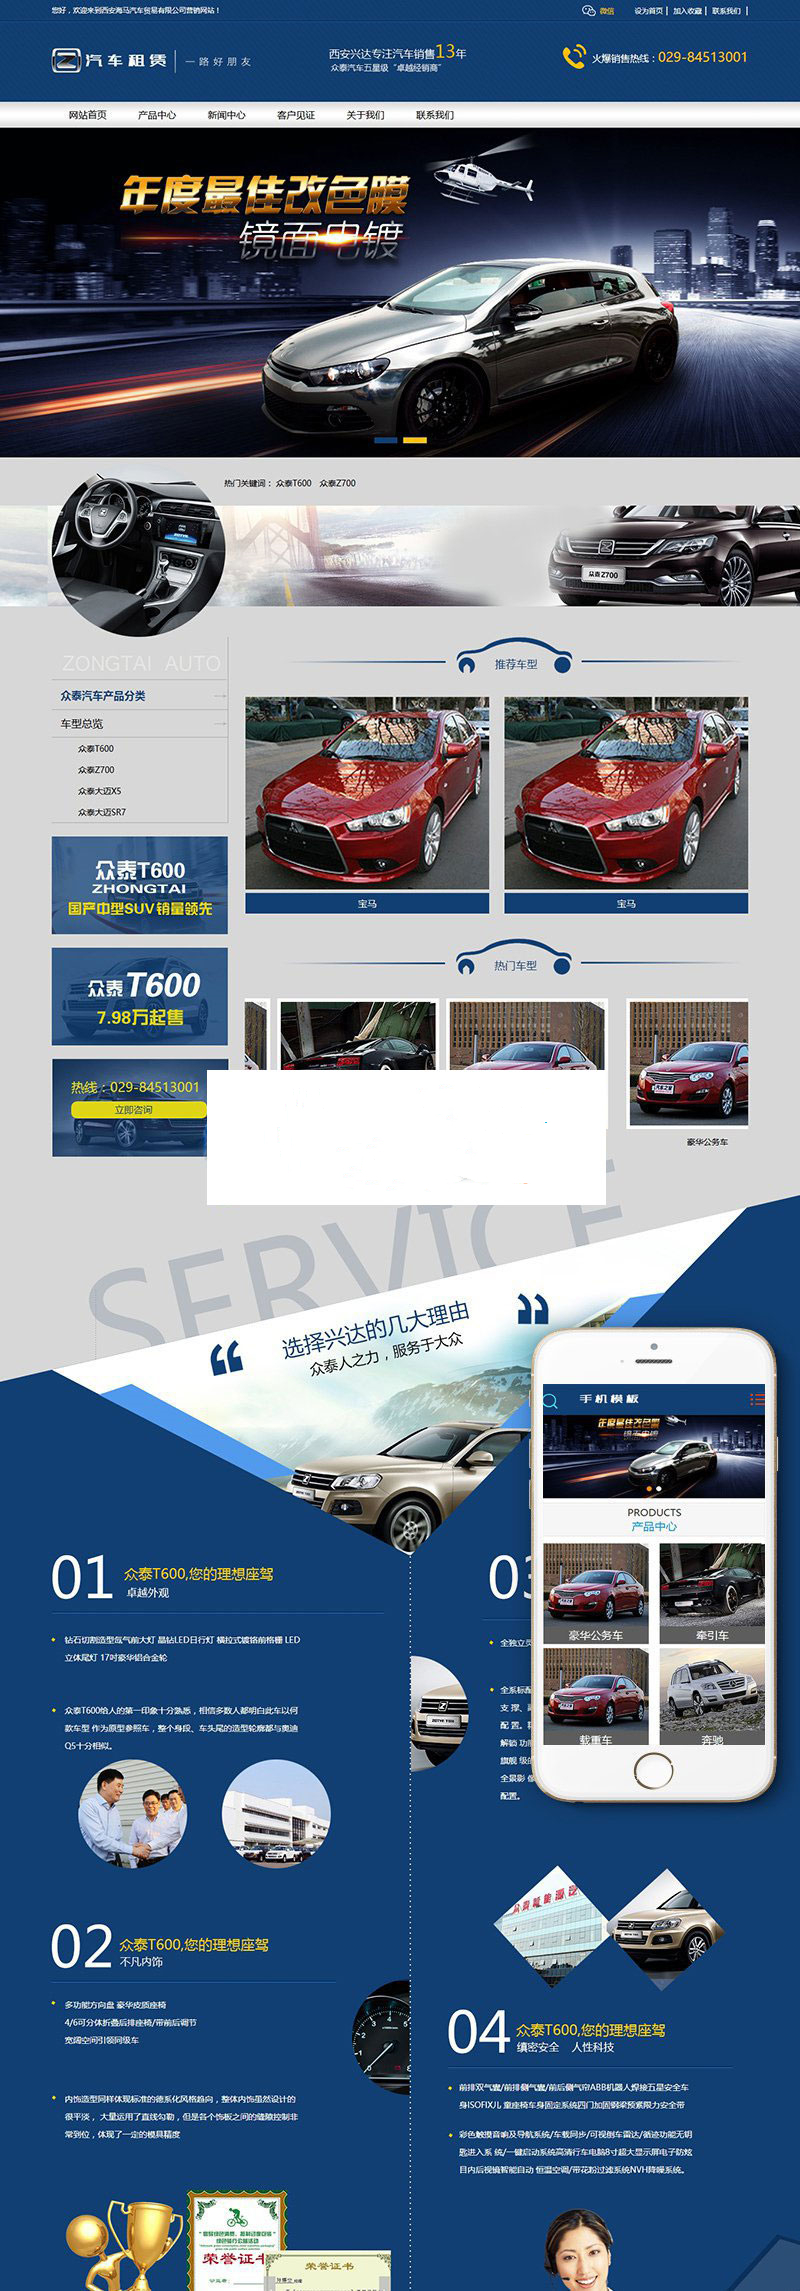 织梦dedecms营销型汽车租赁公司网站模板(带手机移动端)插图源码资源库